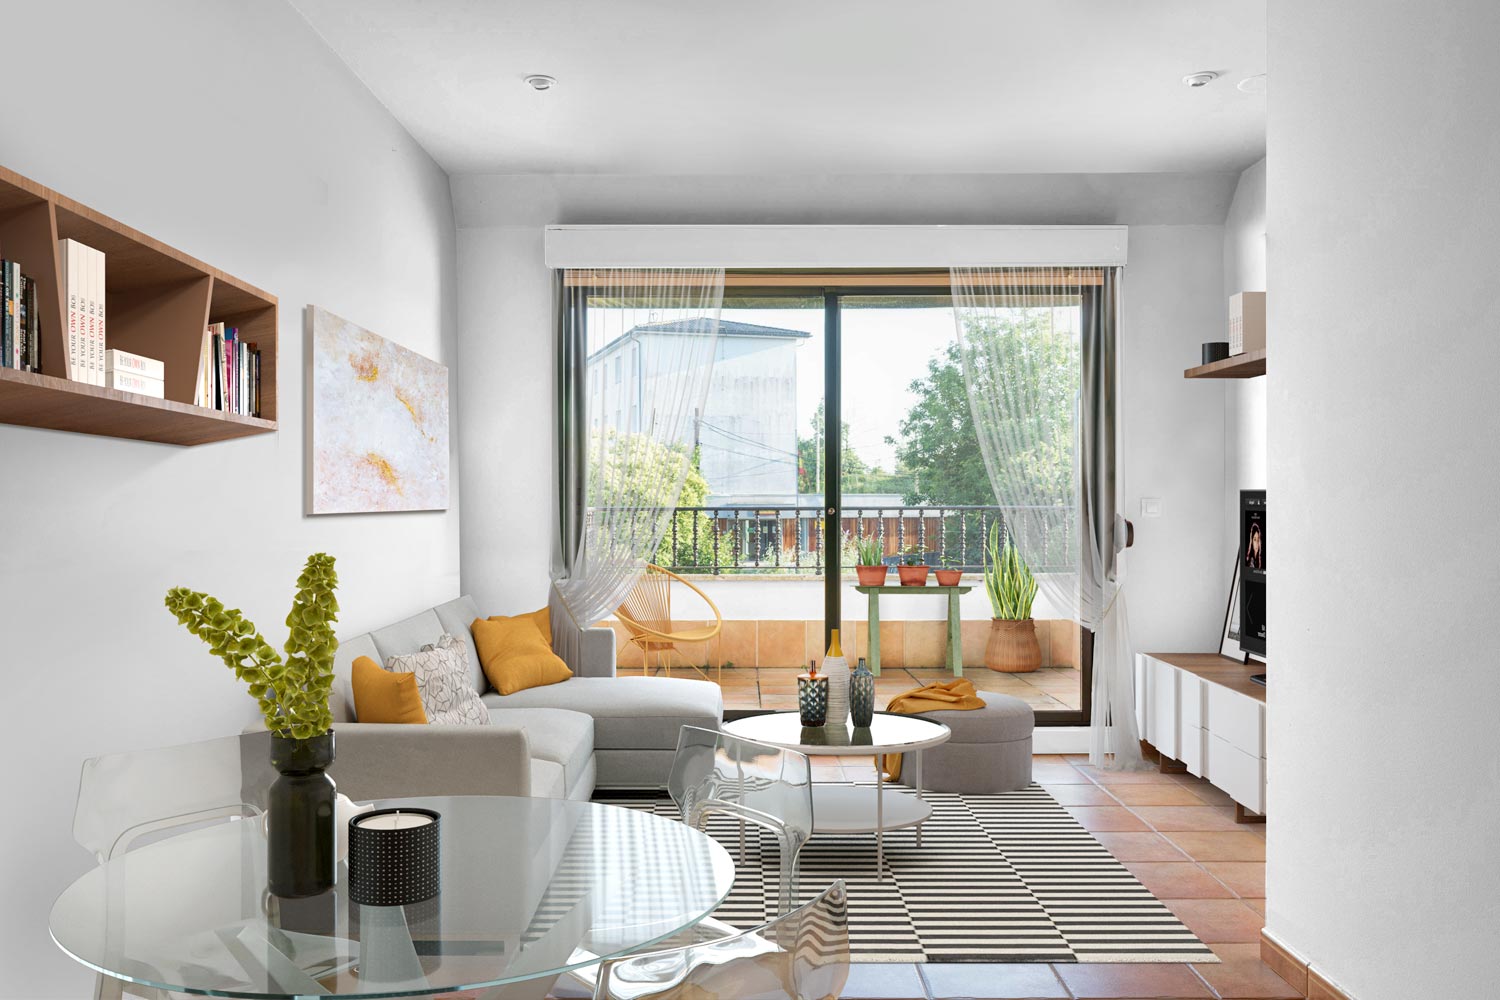 Salón comedor preparado con Home Staging virtual_Estética moderna y elementos transparentes_vista hacia la terraza